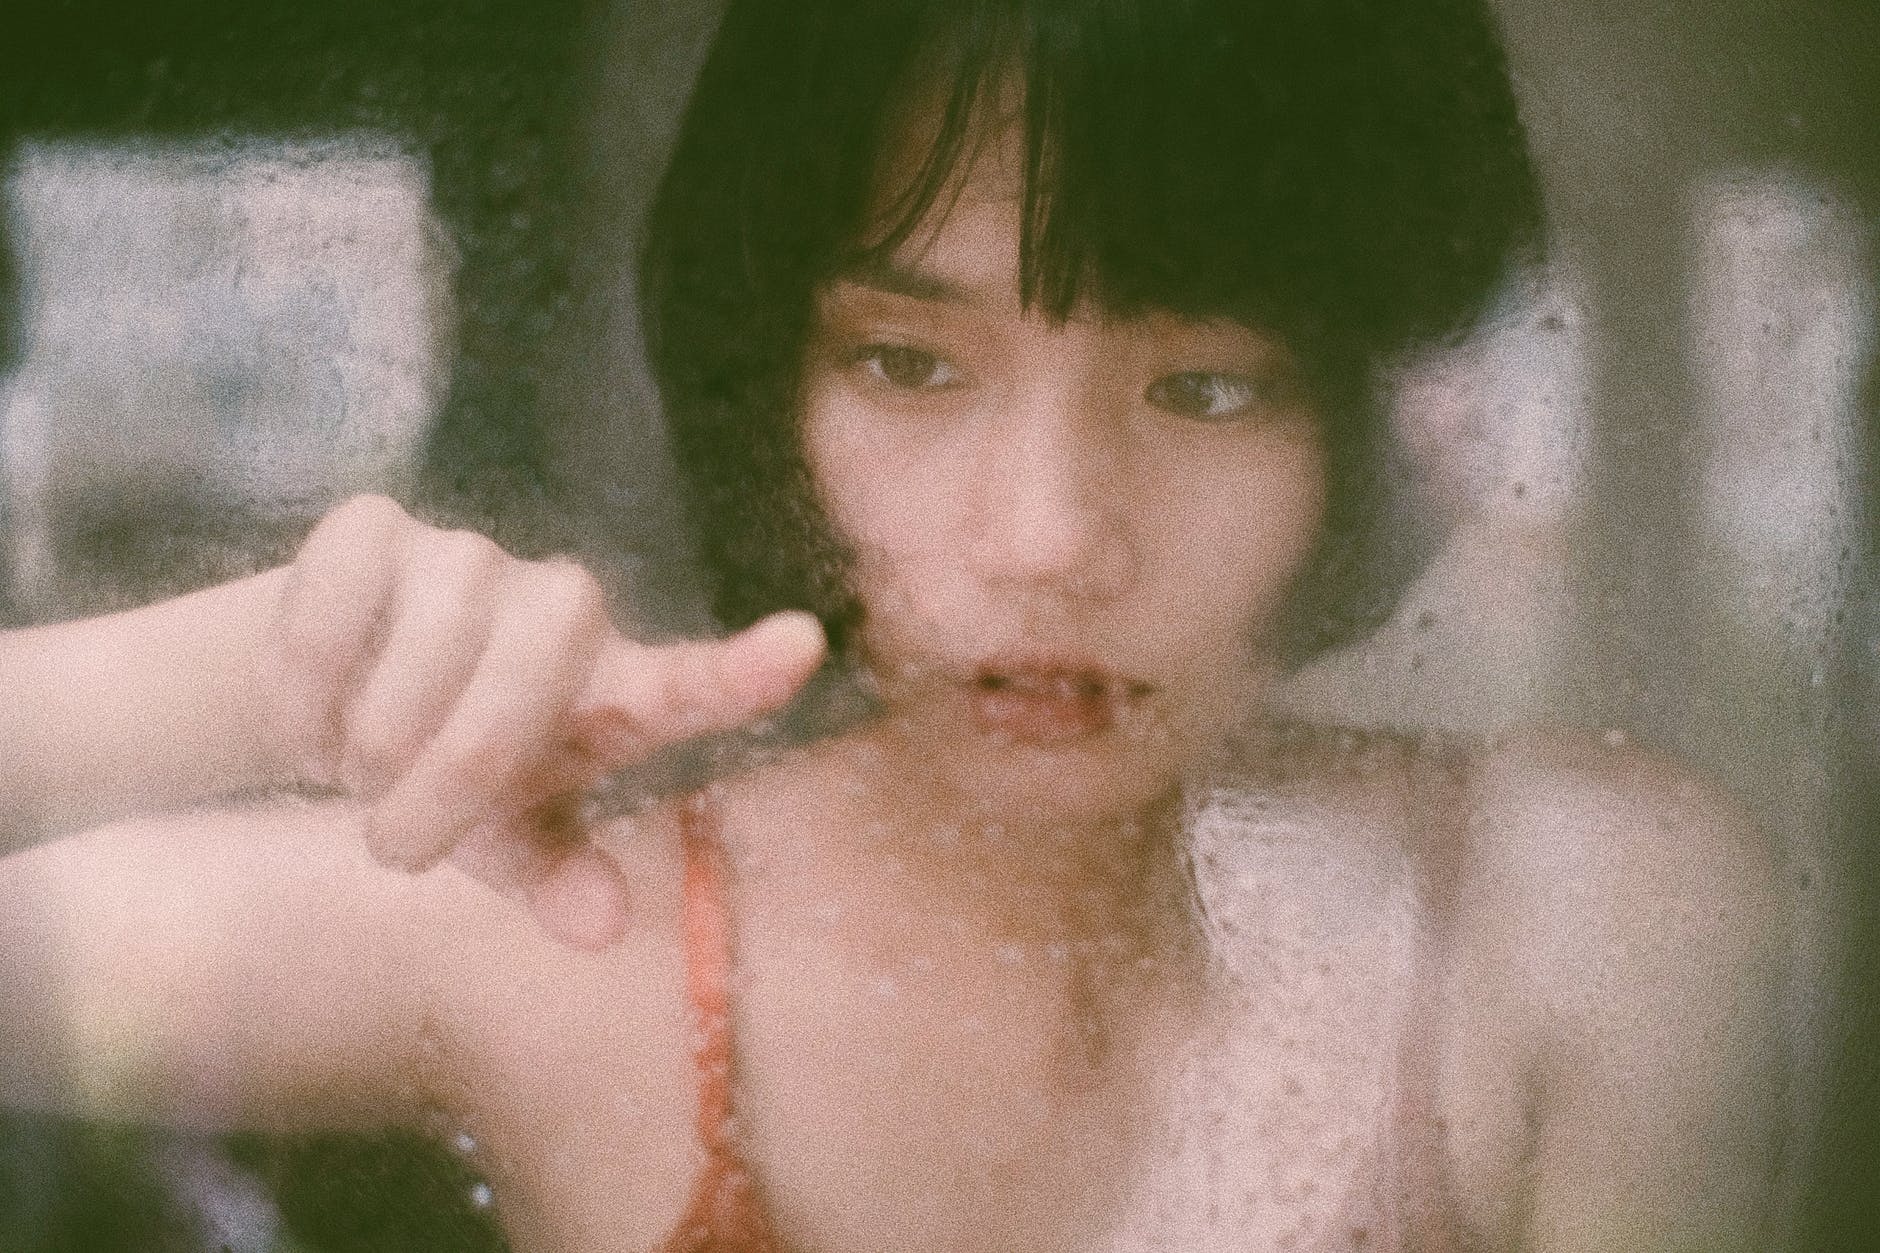 ethnic female touching wet window